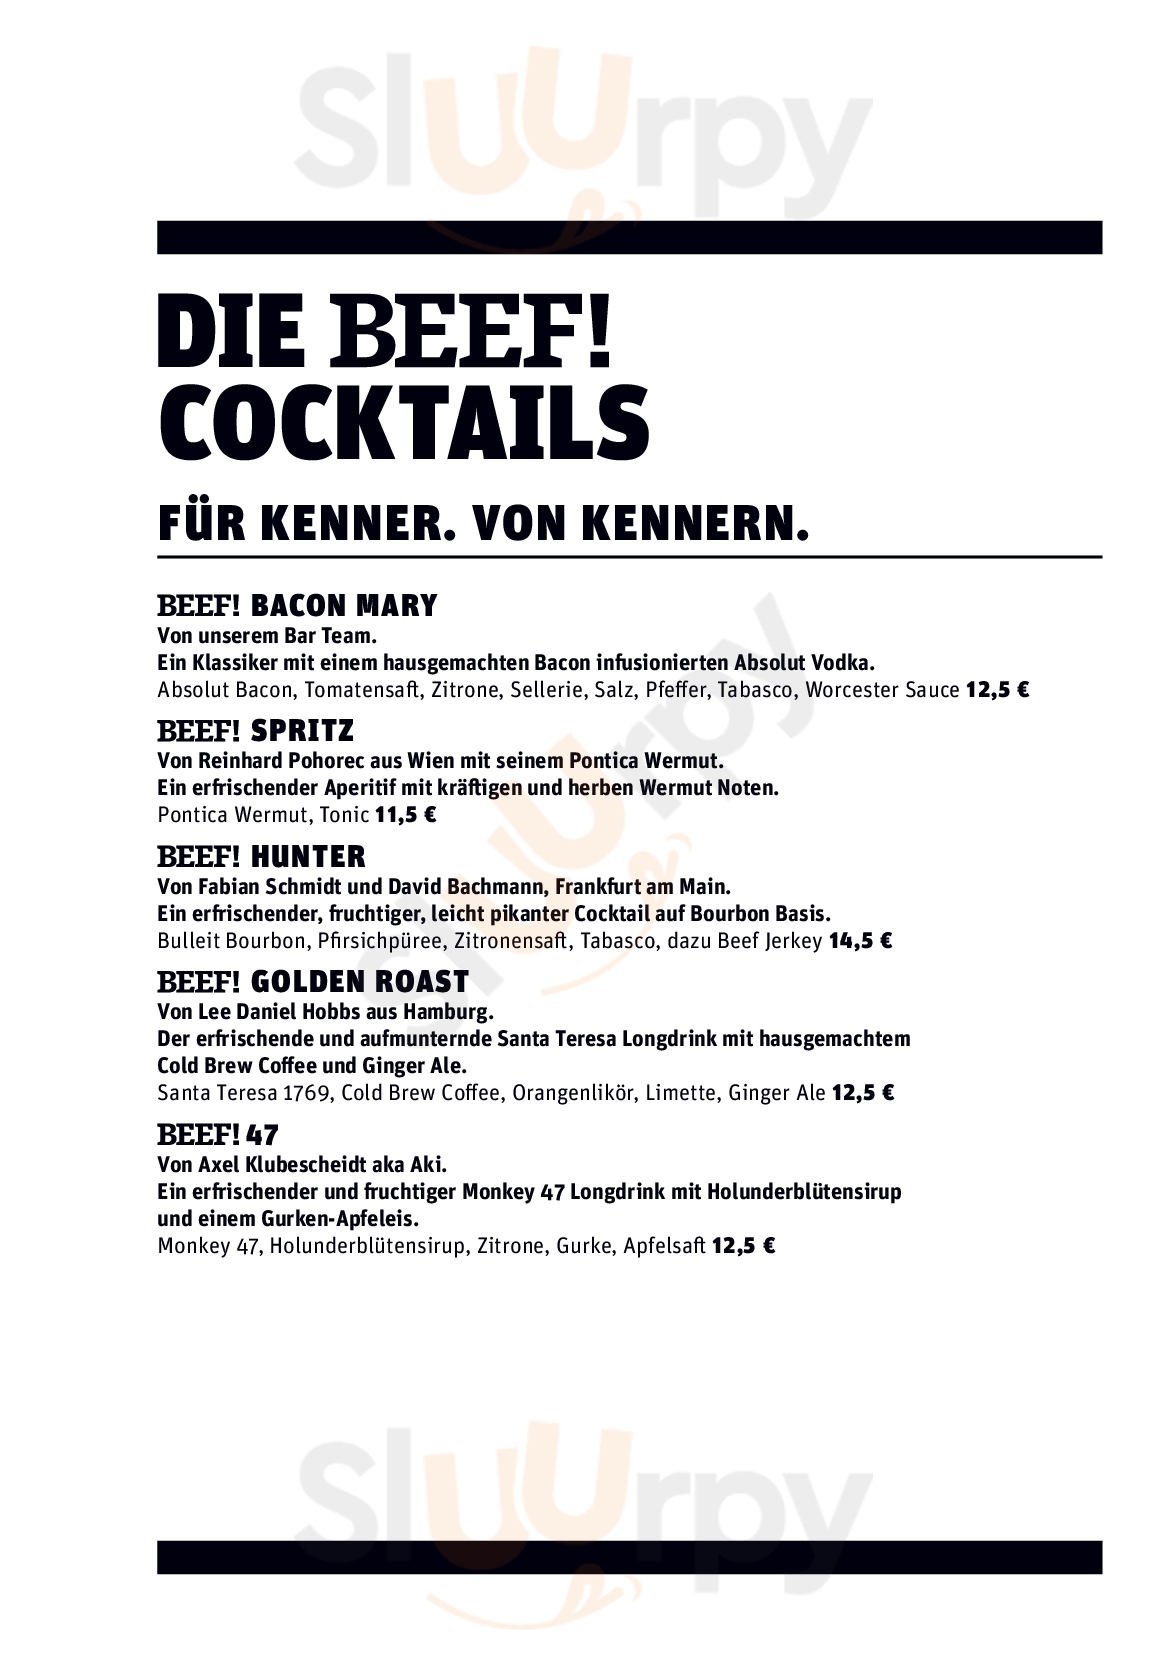 Beef! Grill & Bar Frankfurt am Main Menu - 1